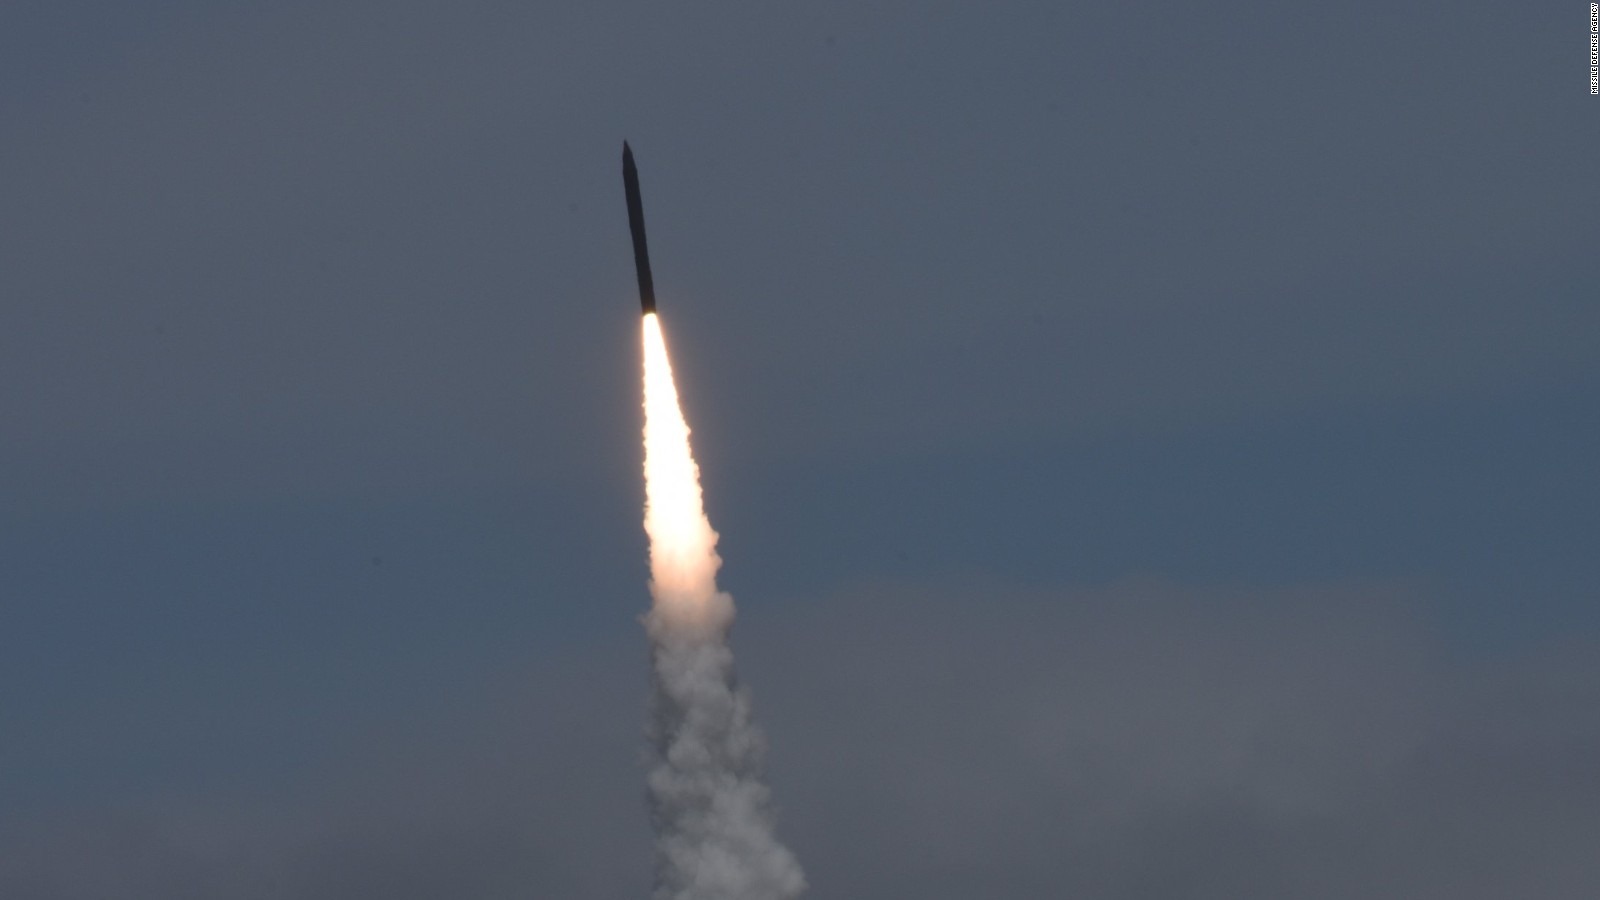 DVIDS - Images - Unarmed Minuteman III ICBM launch [Image 2 of 2]